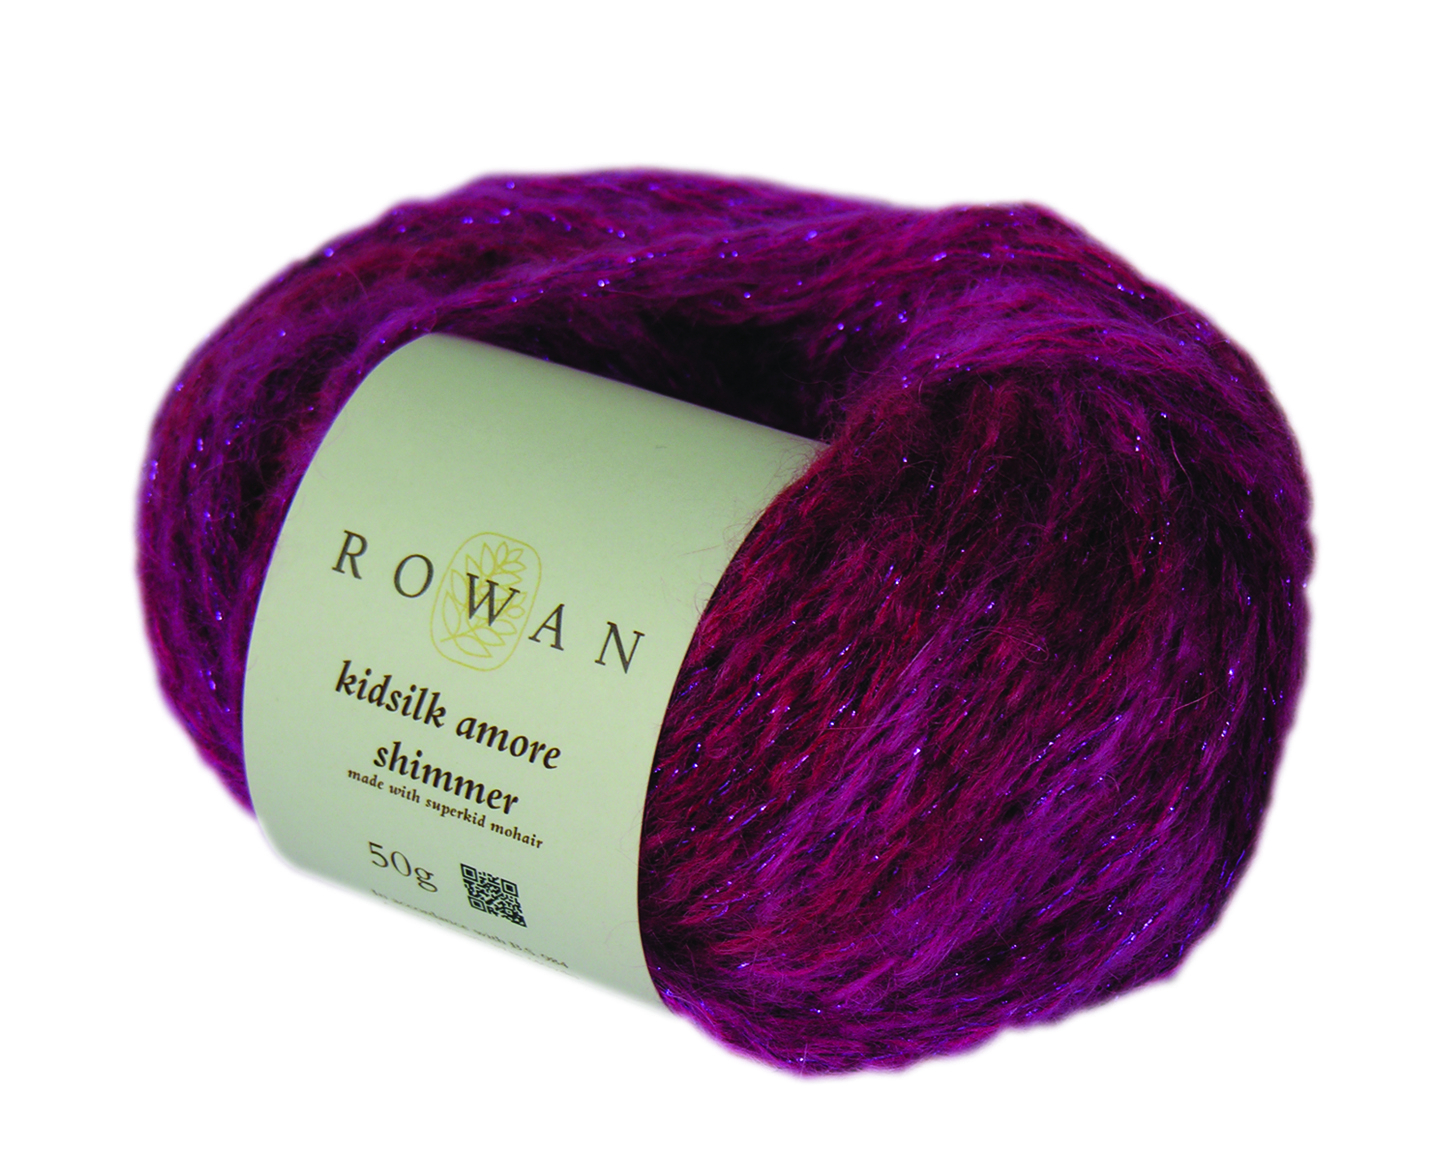 Knitrowan Com Free Knitting Patterns Free Pattern Knitting With Rowan Part 3